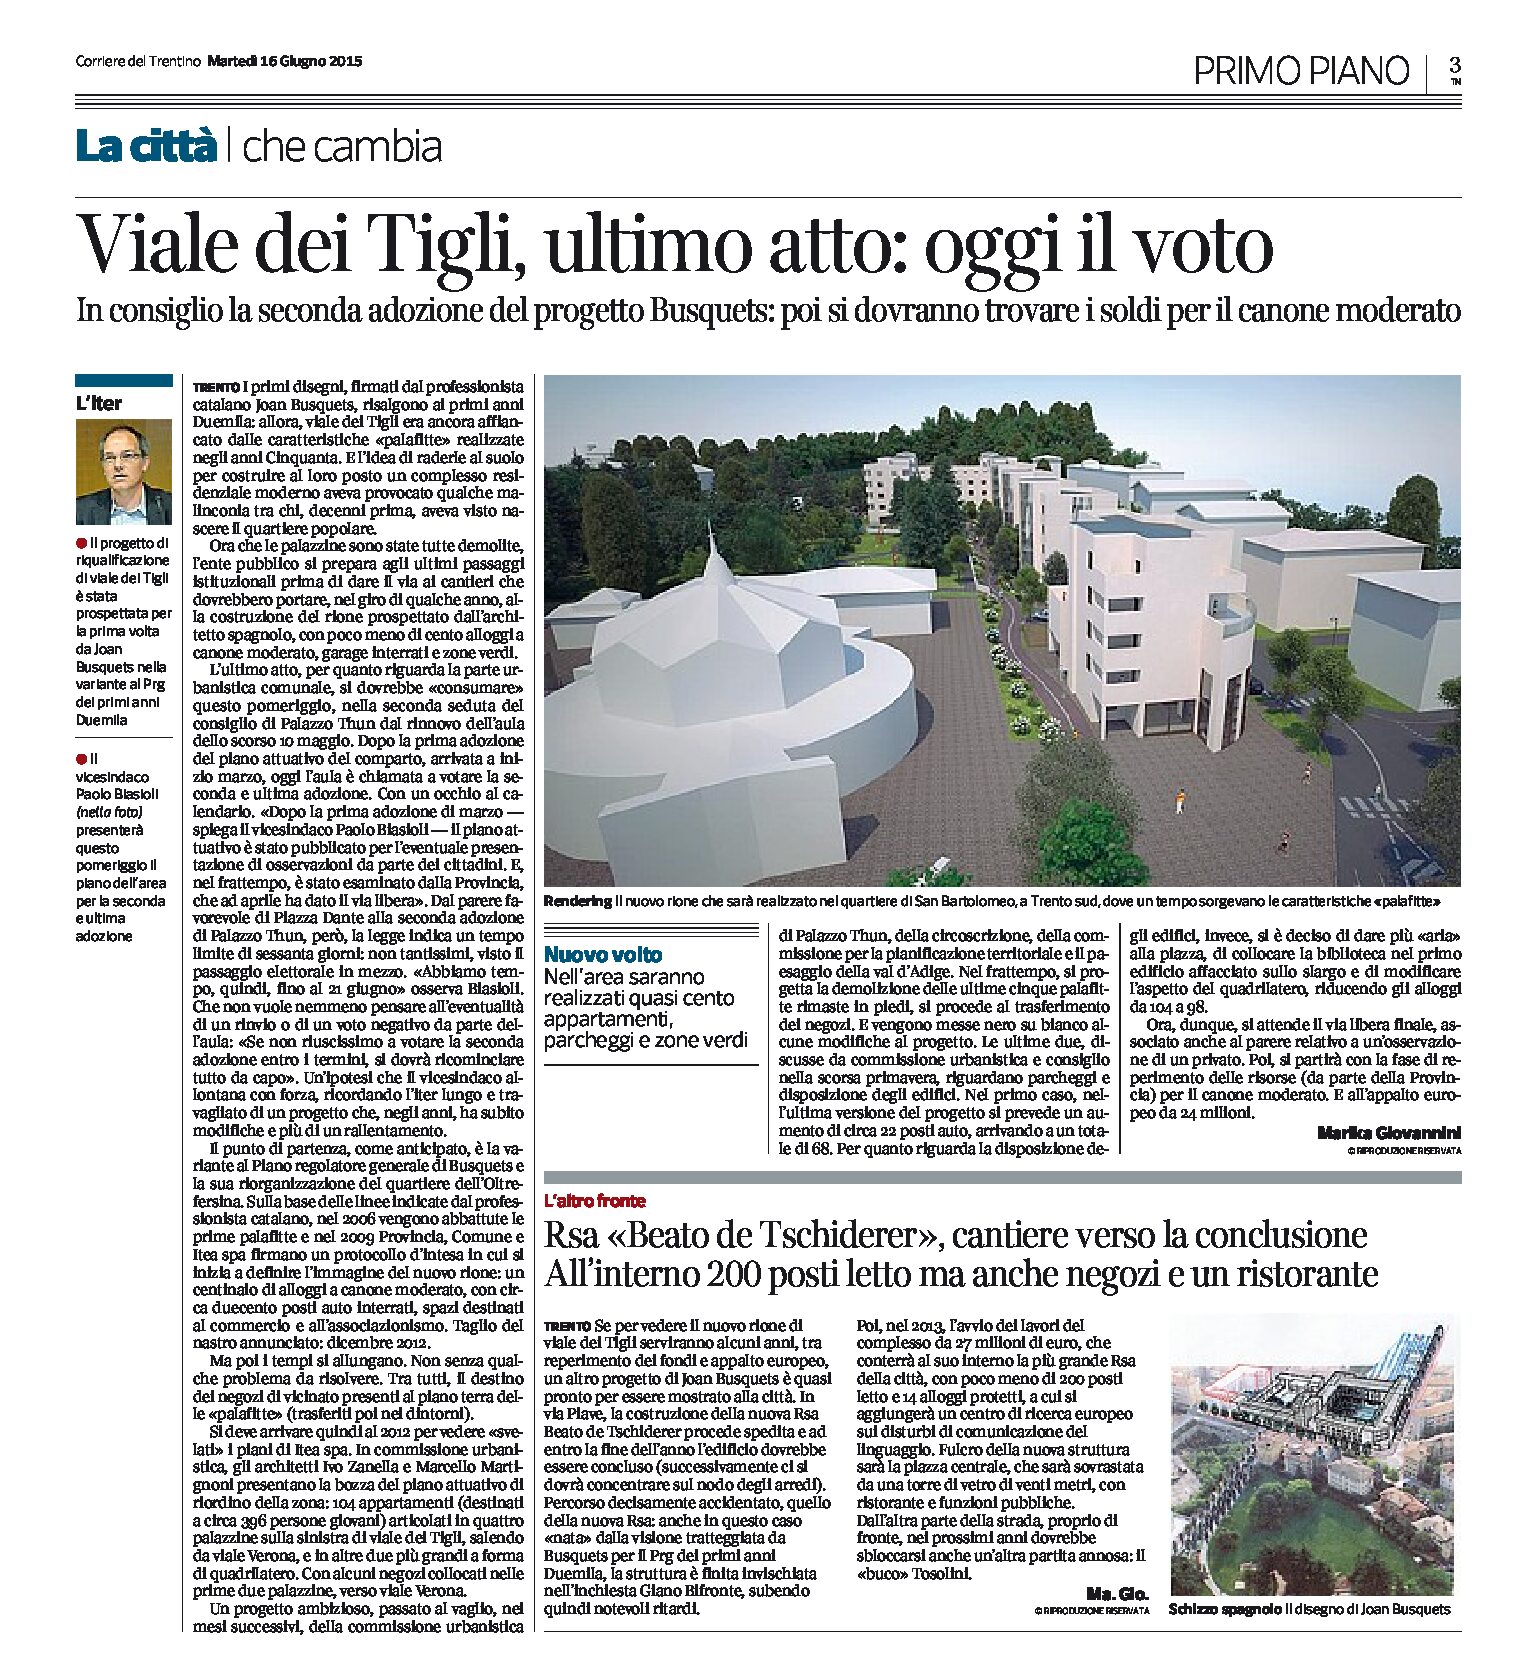 Trento, Busquets: Viale dei Tigli oggi il voto, Rsa “Beato de Tschiderer” verso la conclusione